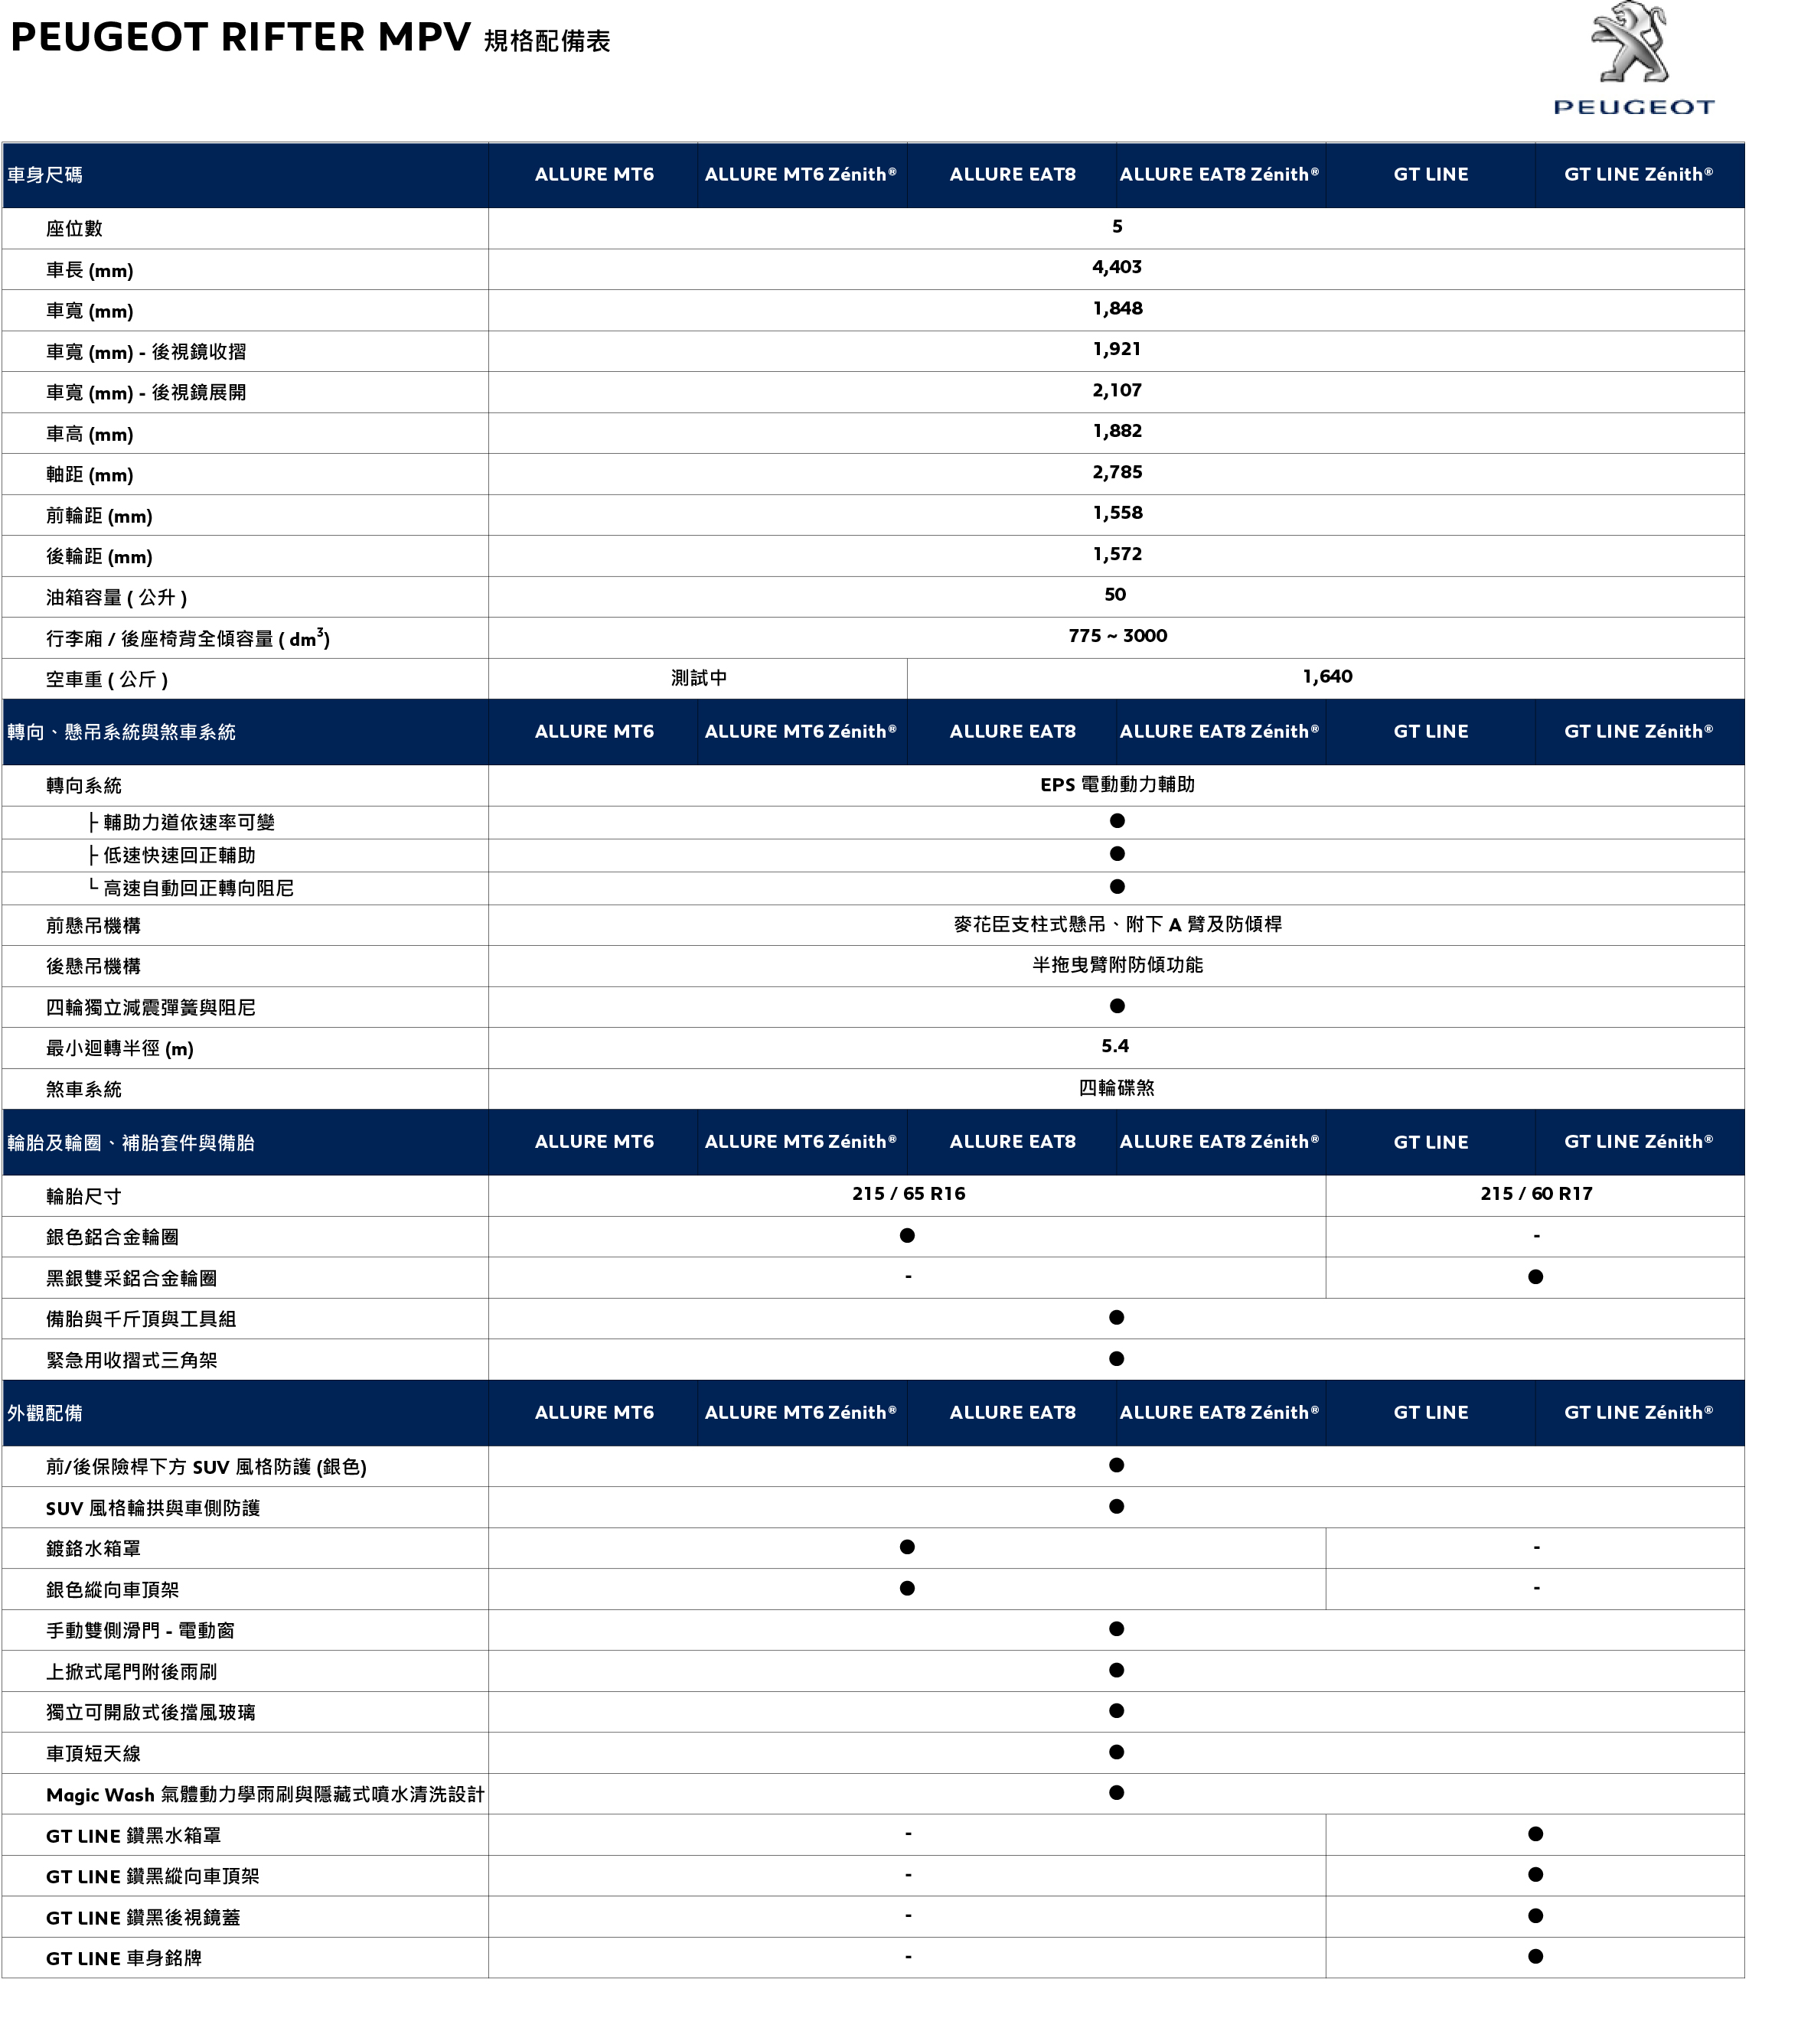 PEUGEOT RIFTER MPV 規格配備表_20191021-2